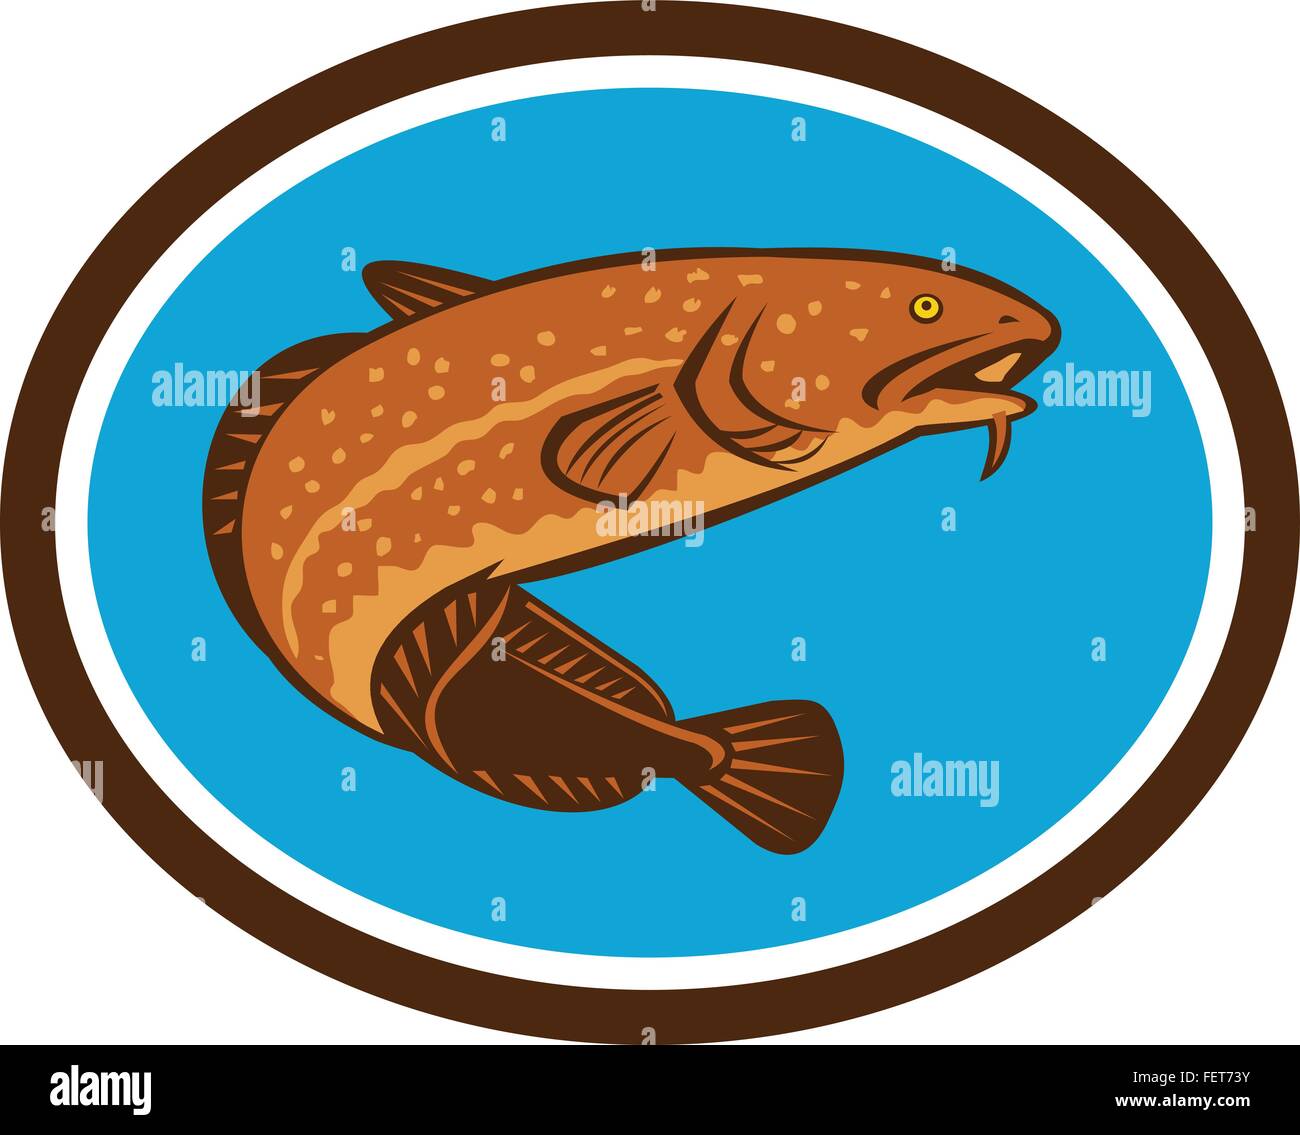 Illustration einer Quappe, Gadiform (Kabeljau-Like) Süßwasserfische, betrachtet aus einem niedrigen Winkel im inneren ovalen Form getan im retro-Stil. Stock Vektor